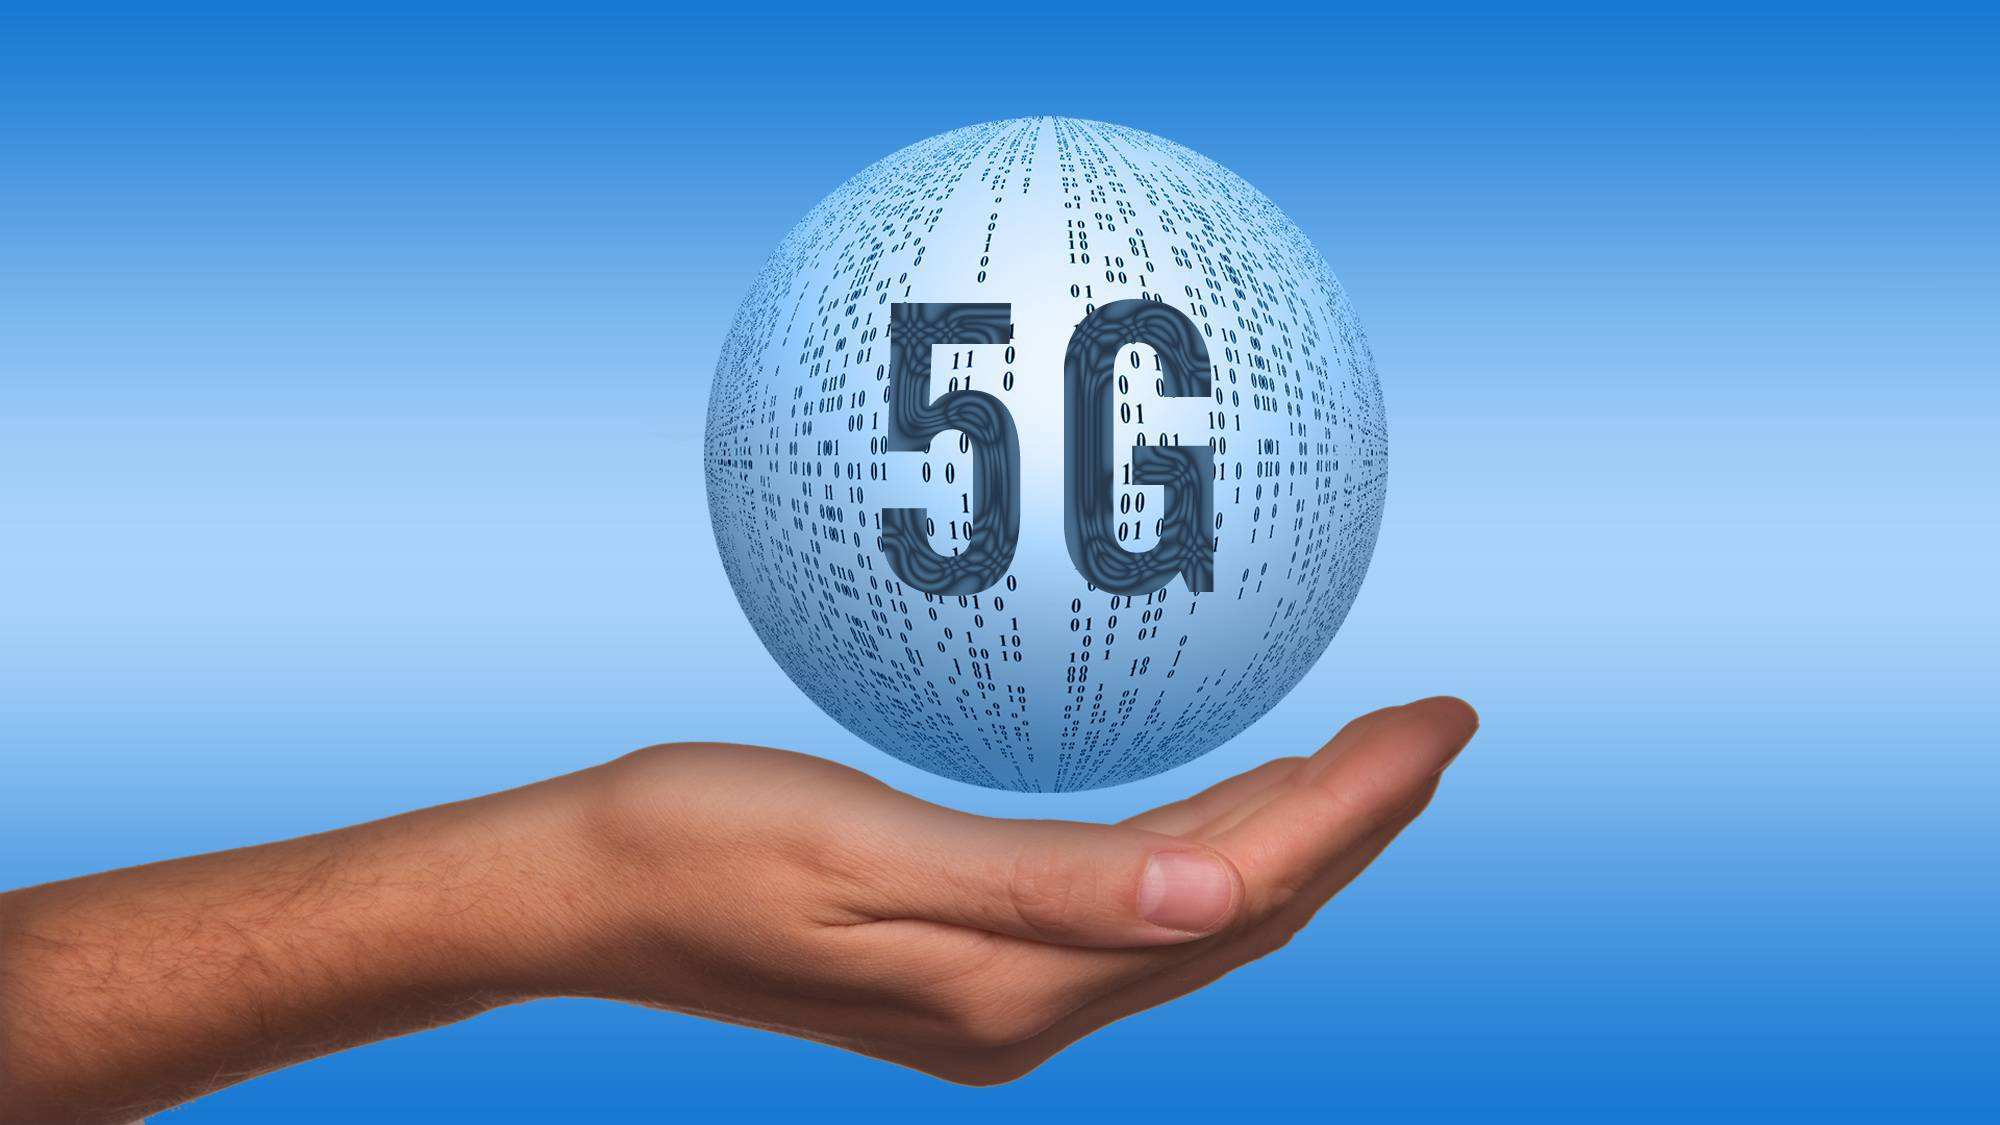 珠海 5G 网络建设现状及未来发展思考：科技创新引领生活方式转型  第5张